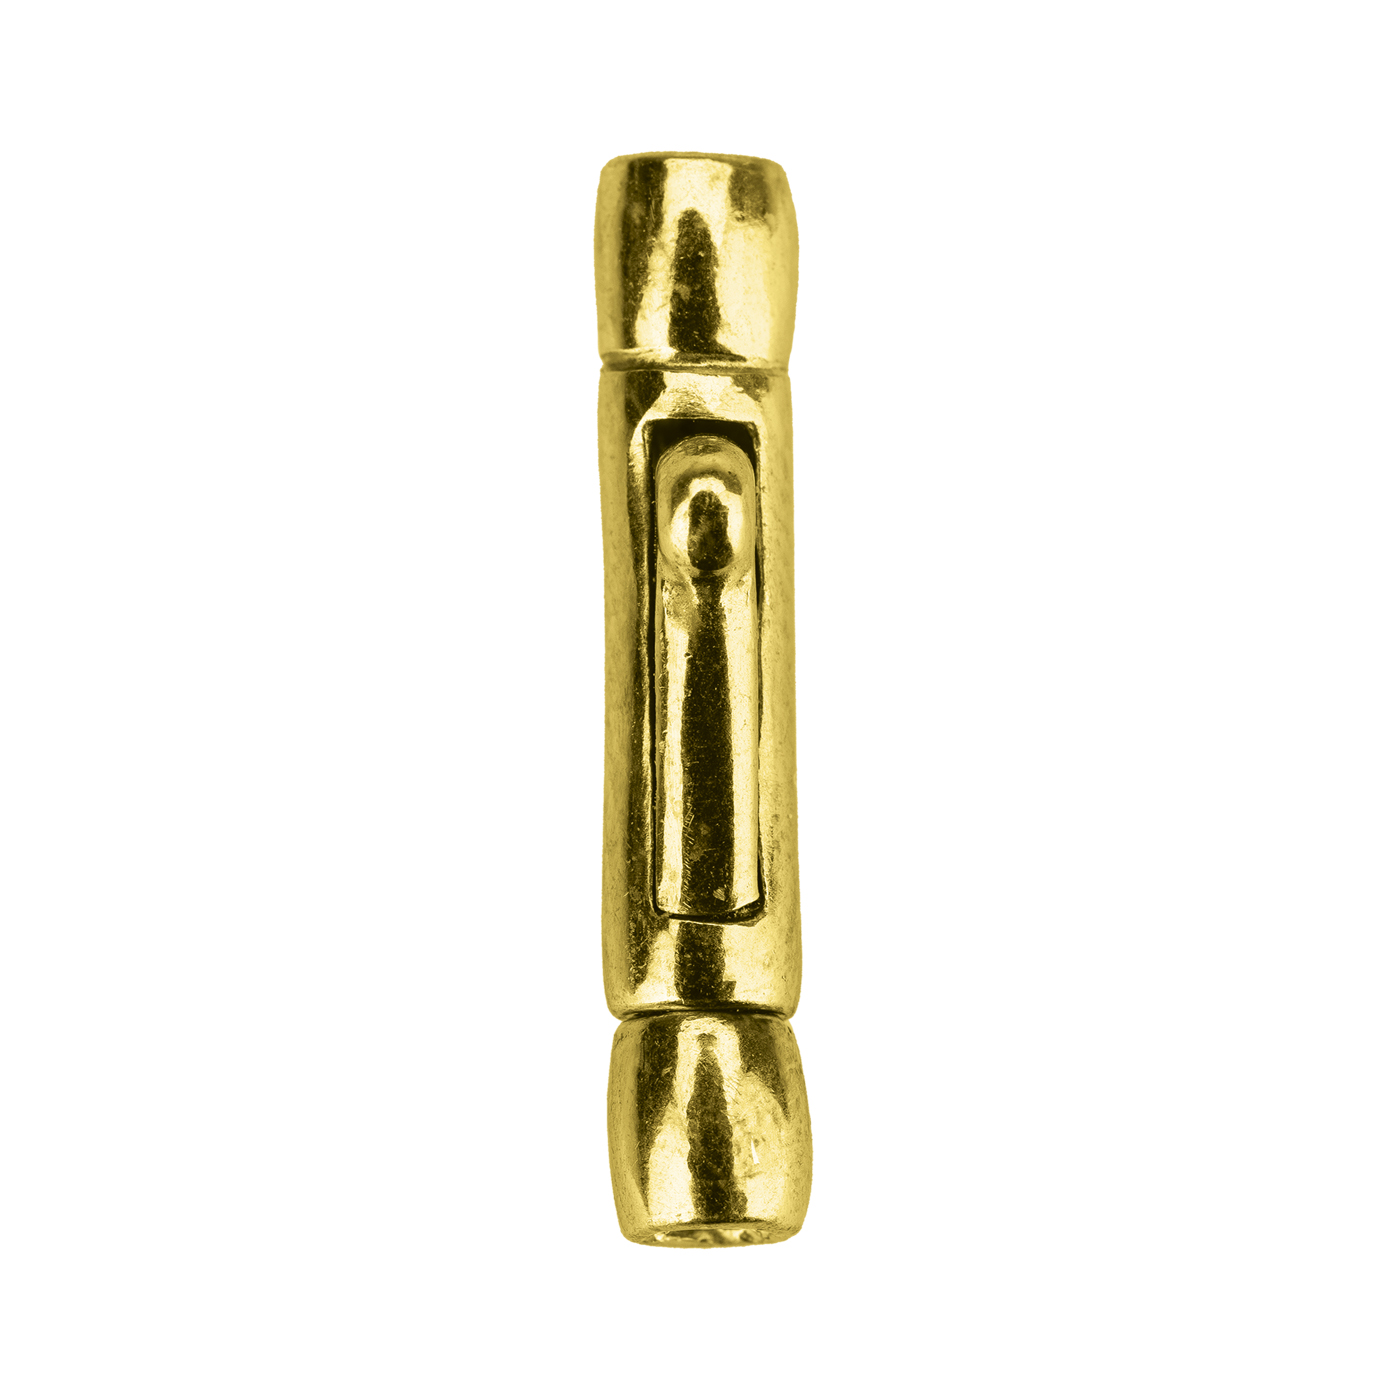 Krokodilverschluss, 925 Ag vergoldet, Innen-ø 1,9 mm - 1 Stück